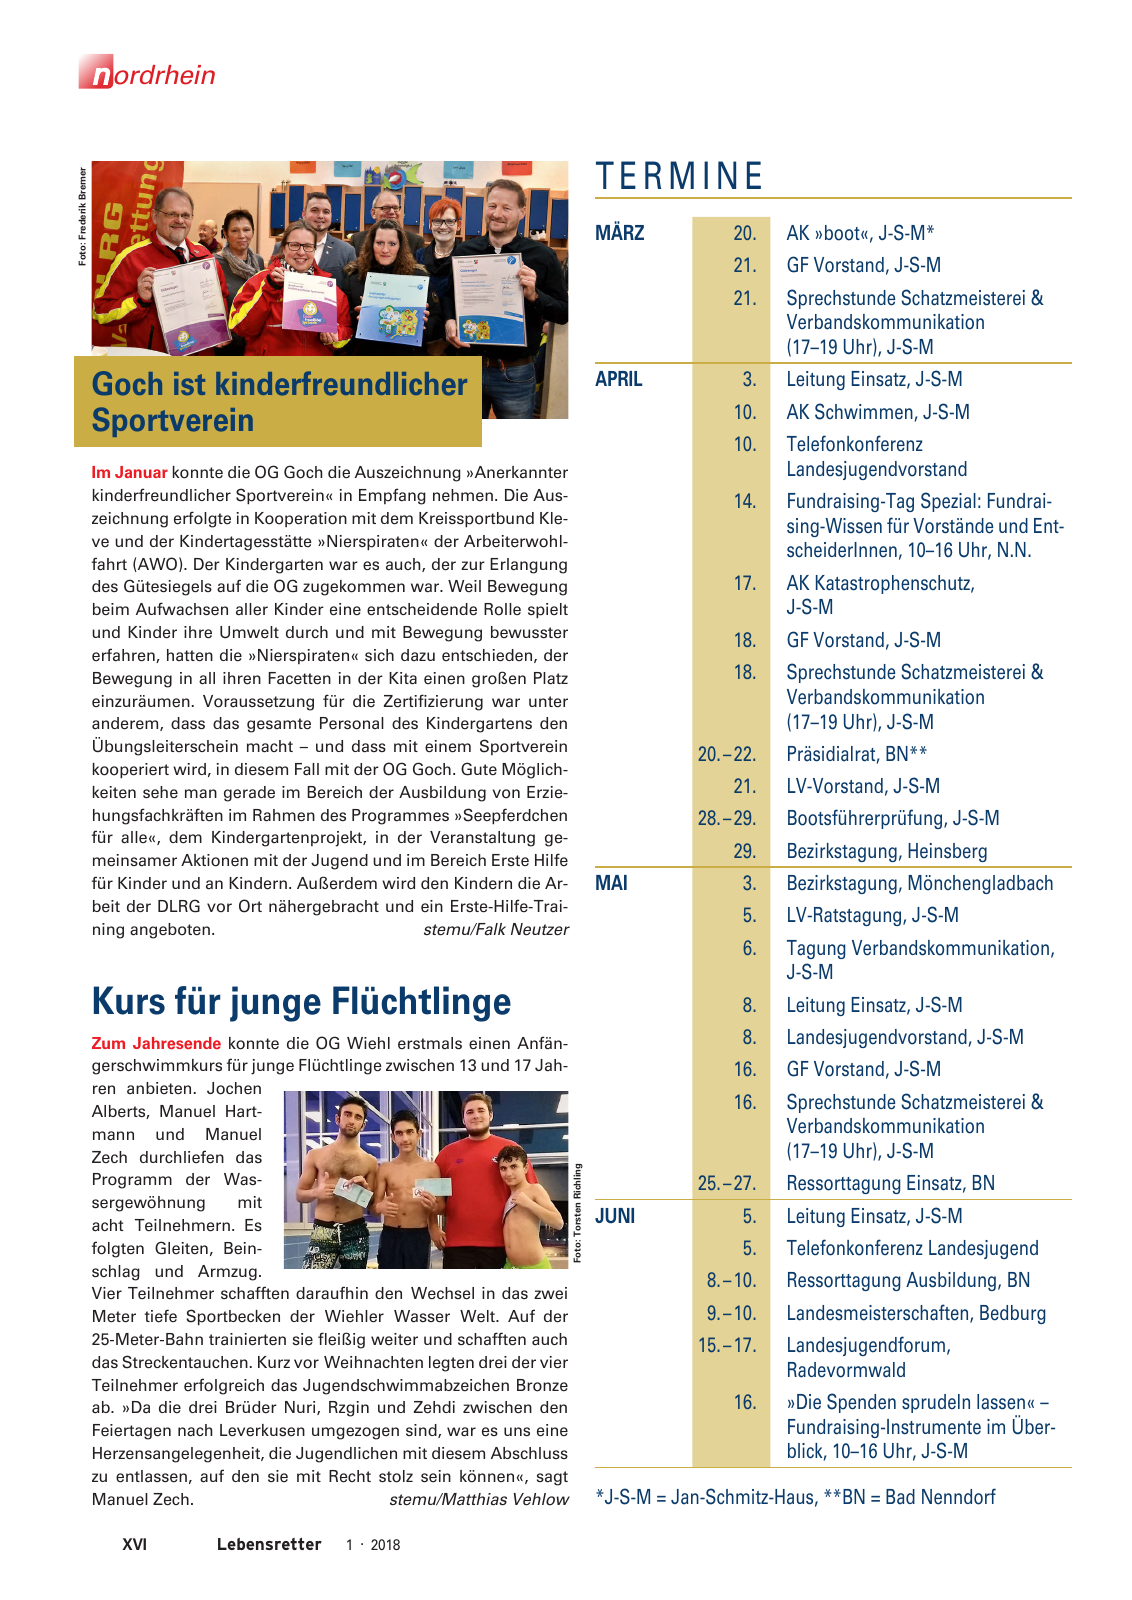 Vorschau Lebensretter 1/2018 - Regionalausgabe Nordrhein Seite 18